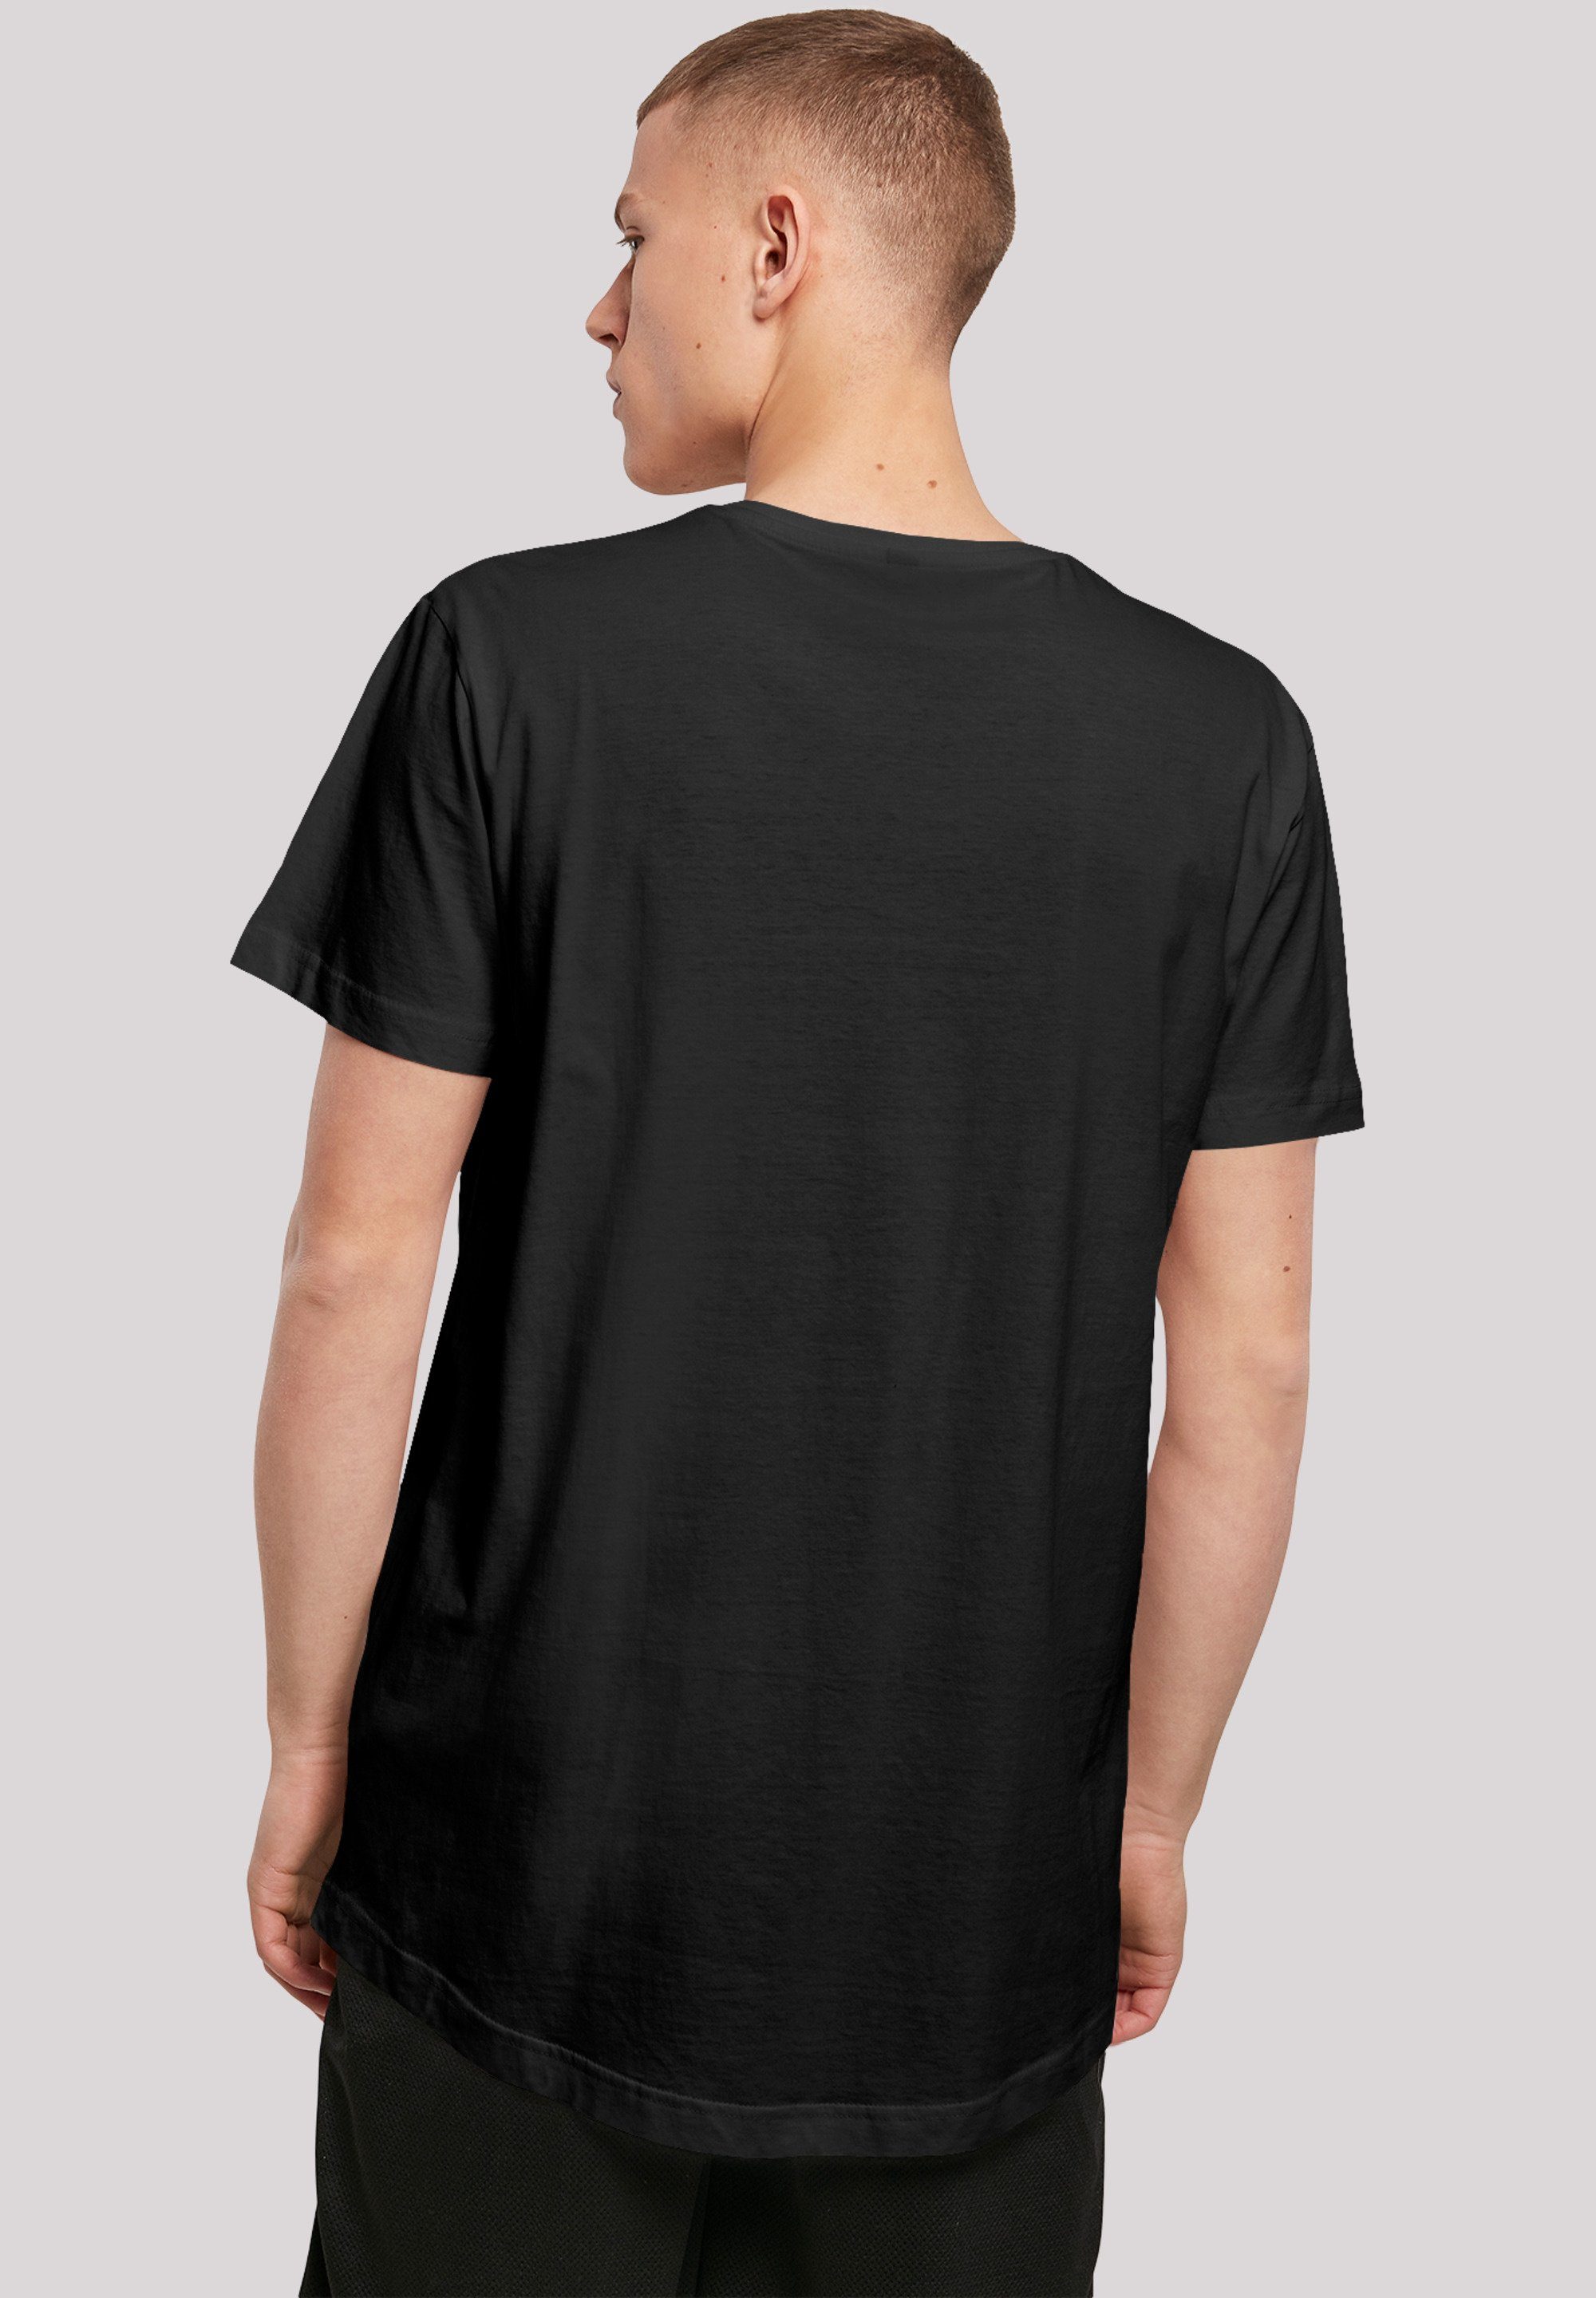 F4NT4STIC T-Shirt Winnie Pooh' Print schwarz